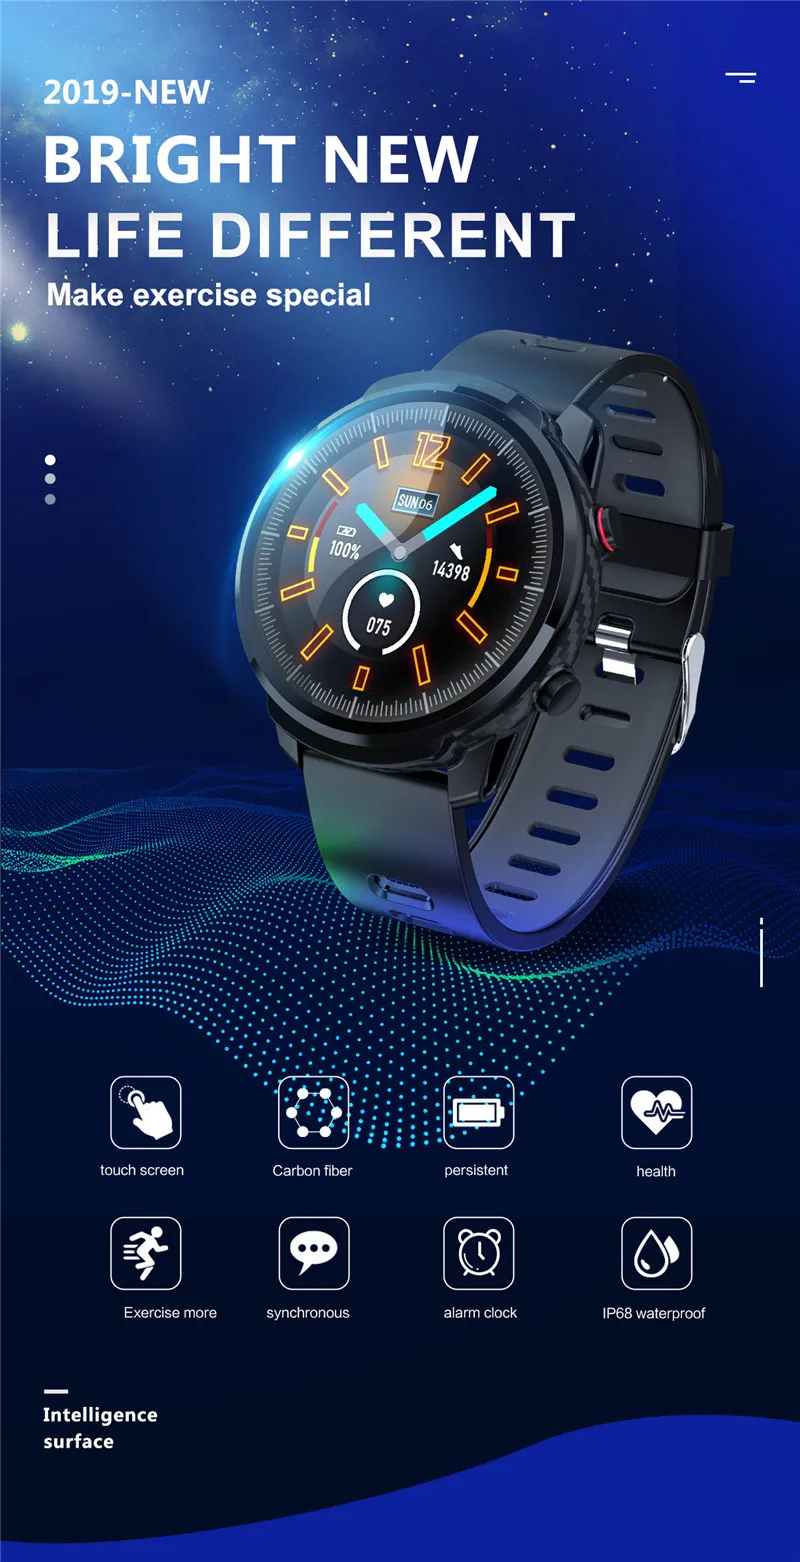 ESEED L5 Pro S10 Plus, умные часы для мужчин, IP67, водонепроницаемые, полный сенсорный экран, 60 дней, длительное время ожидания, умные часы, пульсометр, PK honor watch